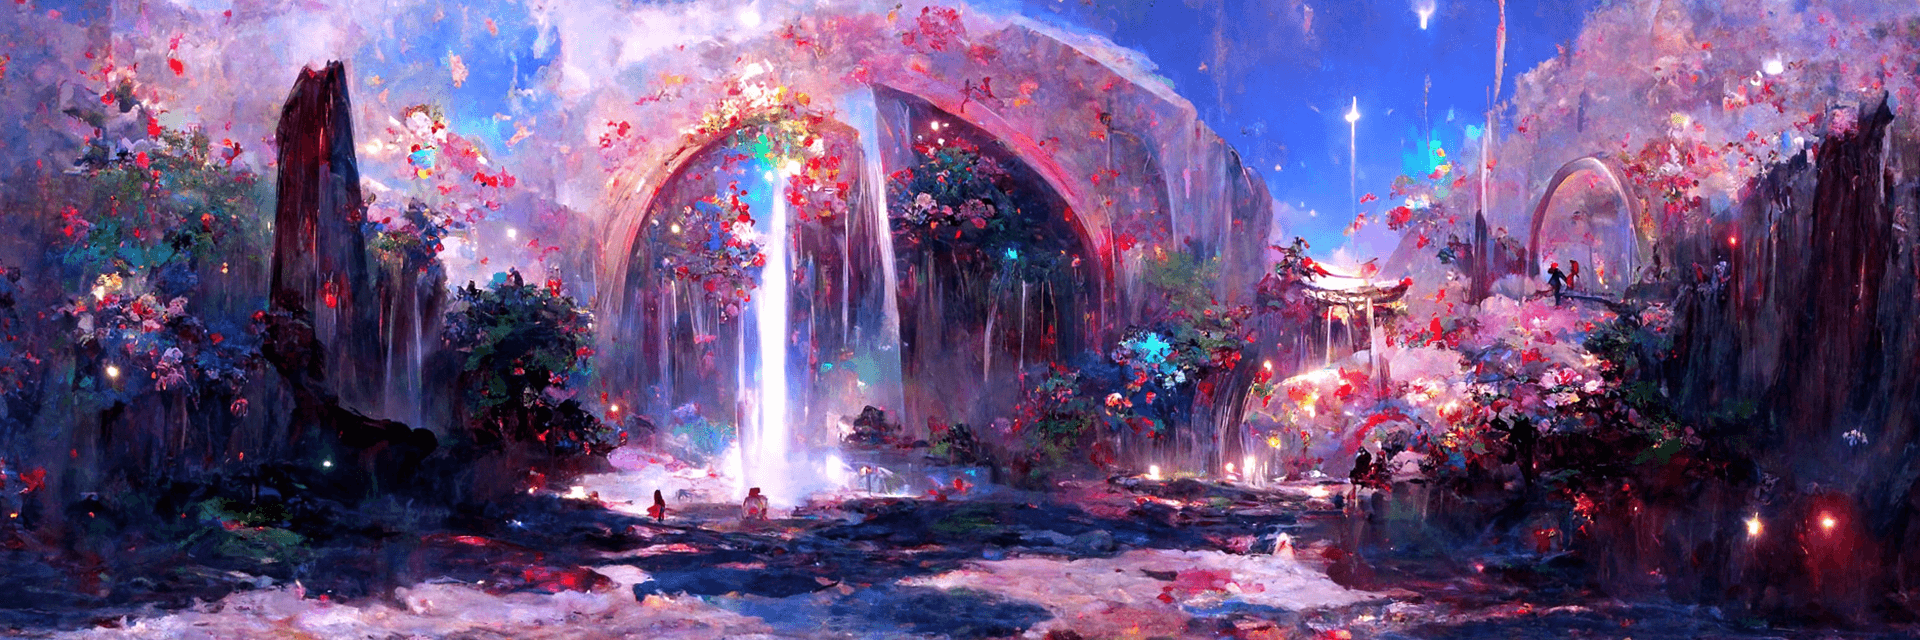 Portal to The Garden #183